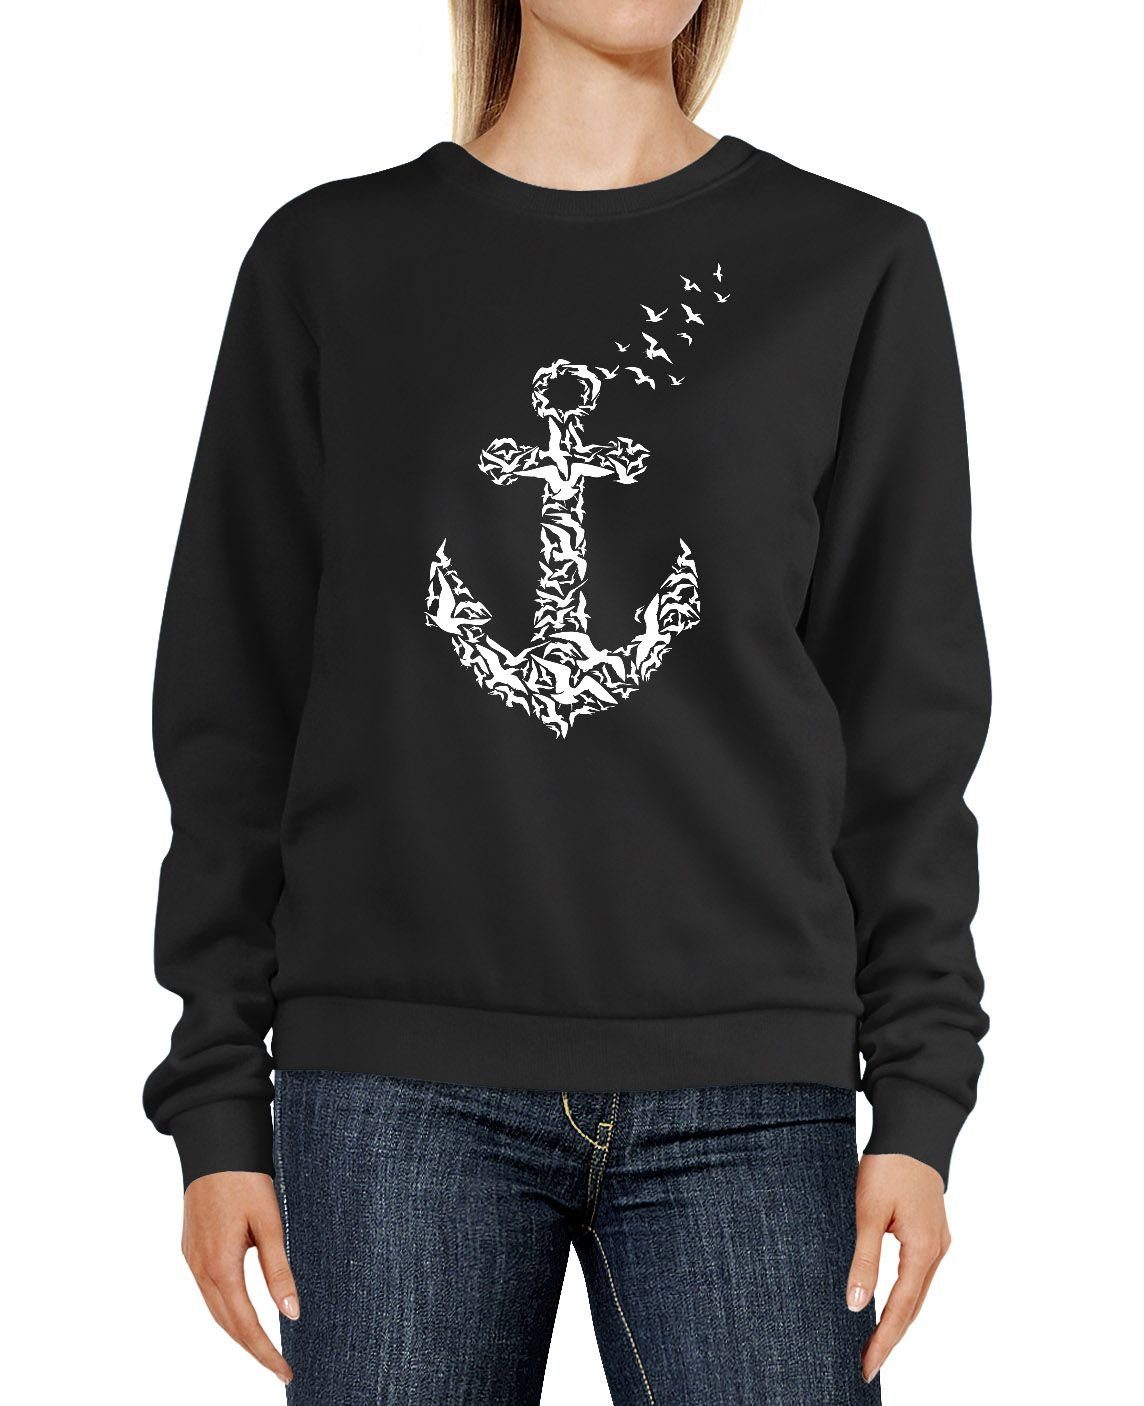 Neverless Sweatshirt »Sweatshirt Damen Anker Vögel Print Aufdruck Rundhals- Pullover Pulli Sweater Neverless®« online kaufen | OTTO